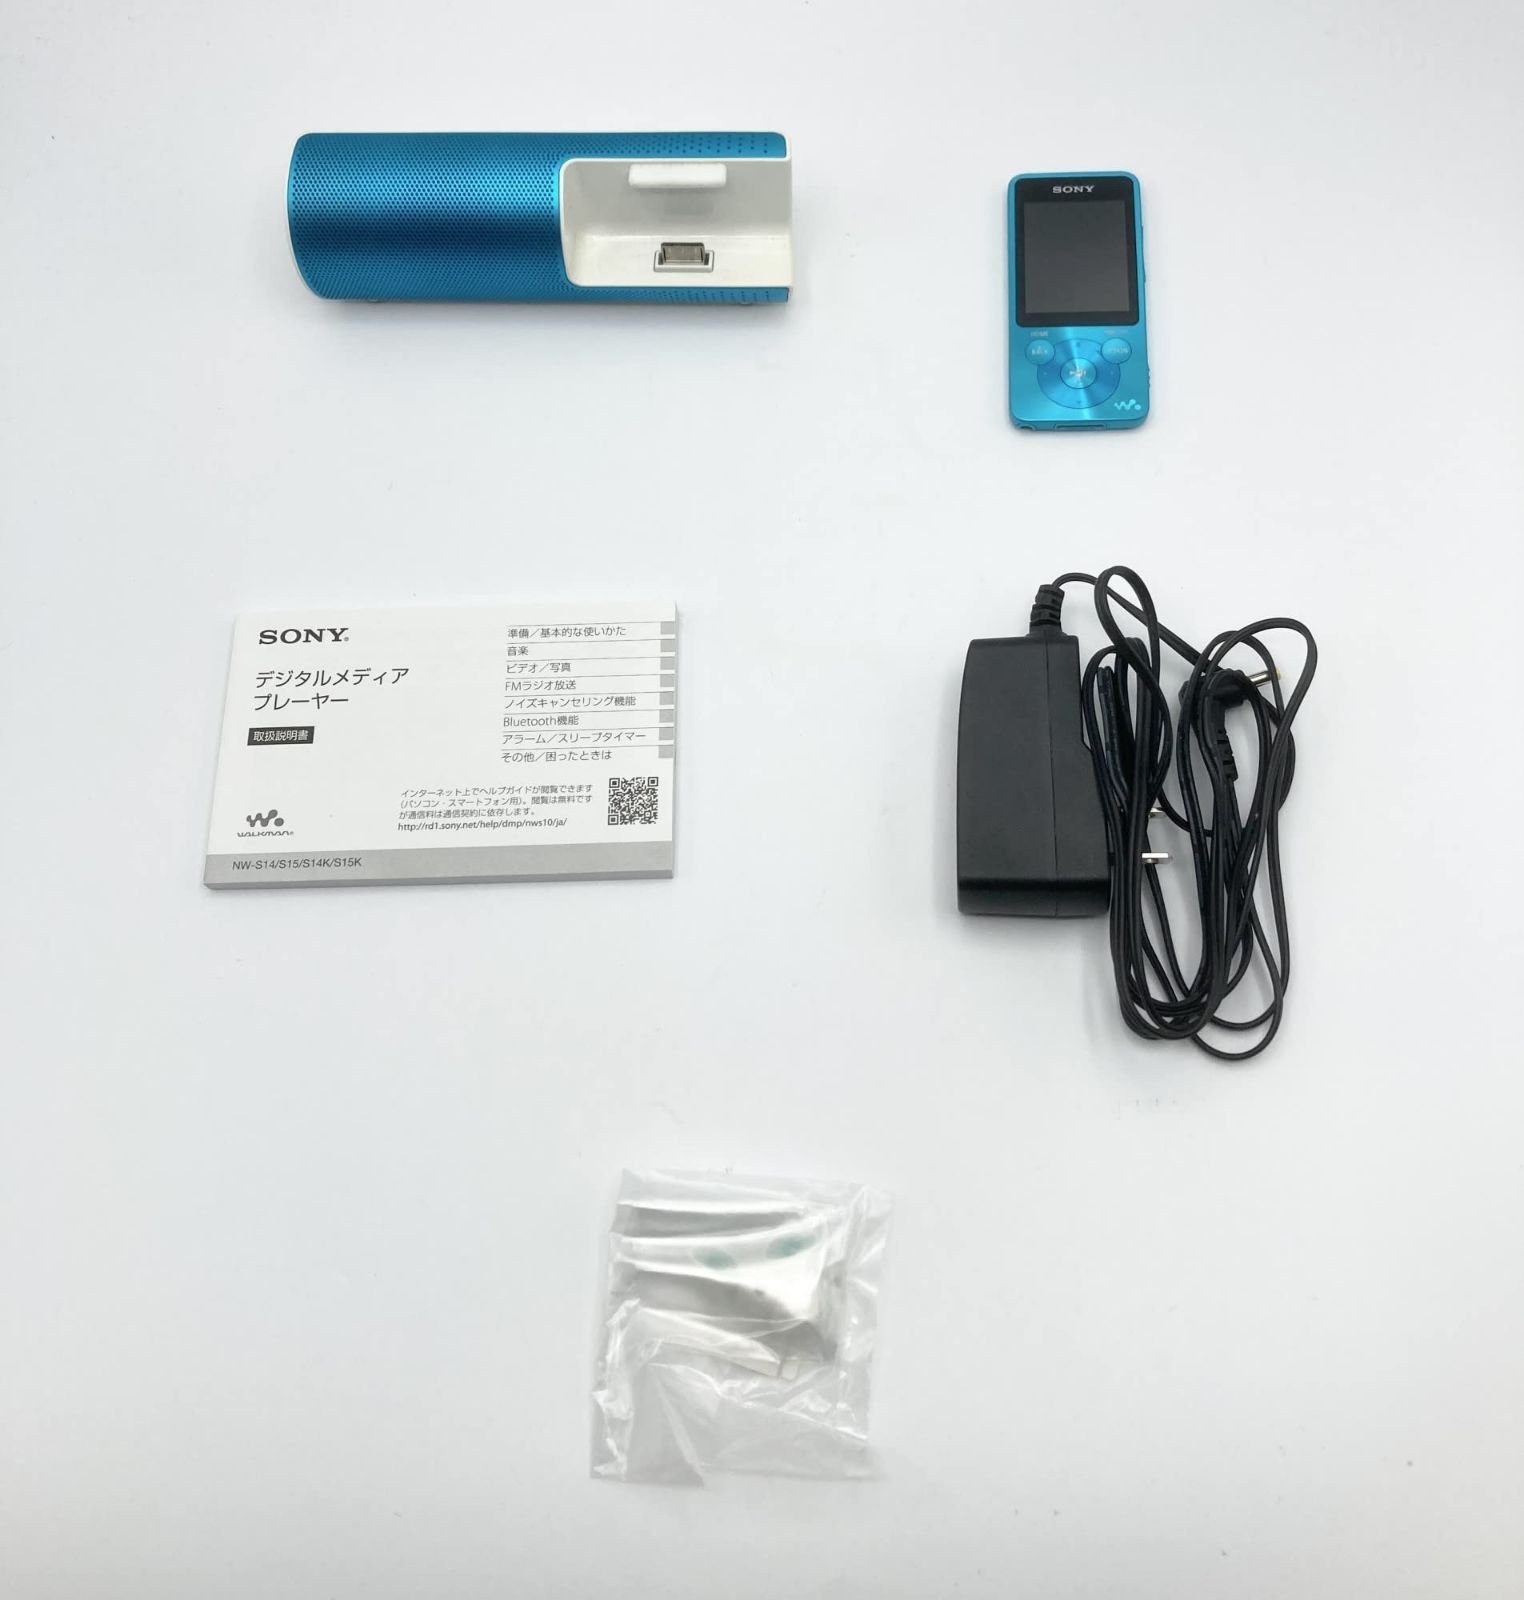 SONY ウォークマン NW-S15(L) 16GB ブルー Sシリーズ - ポータブル ...